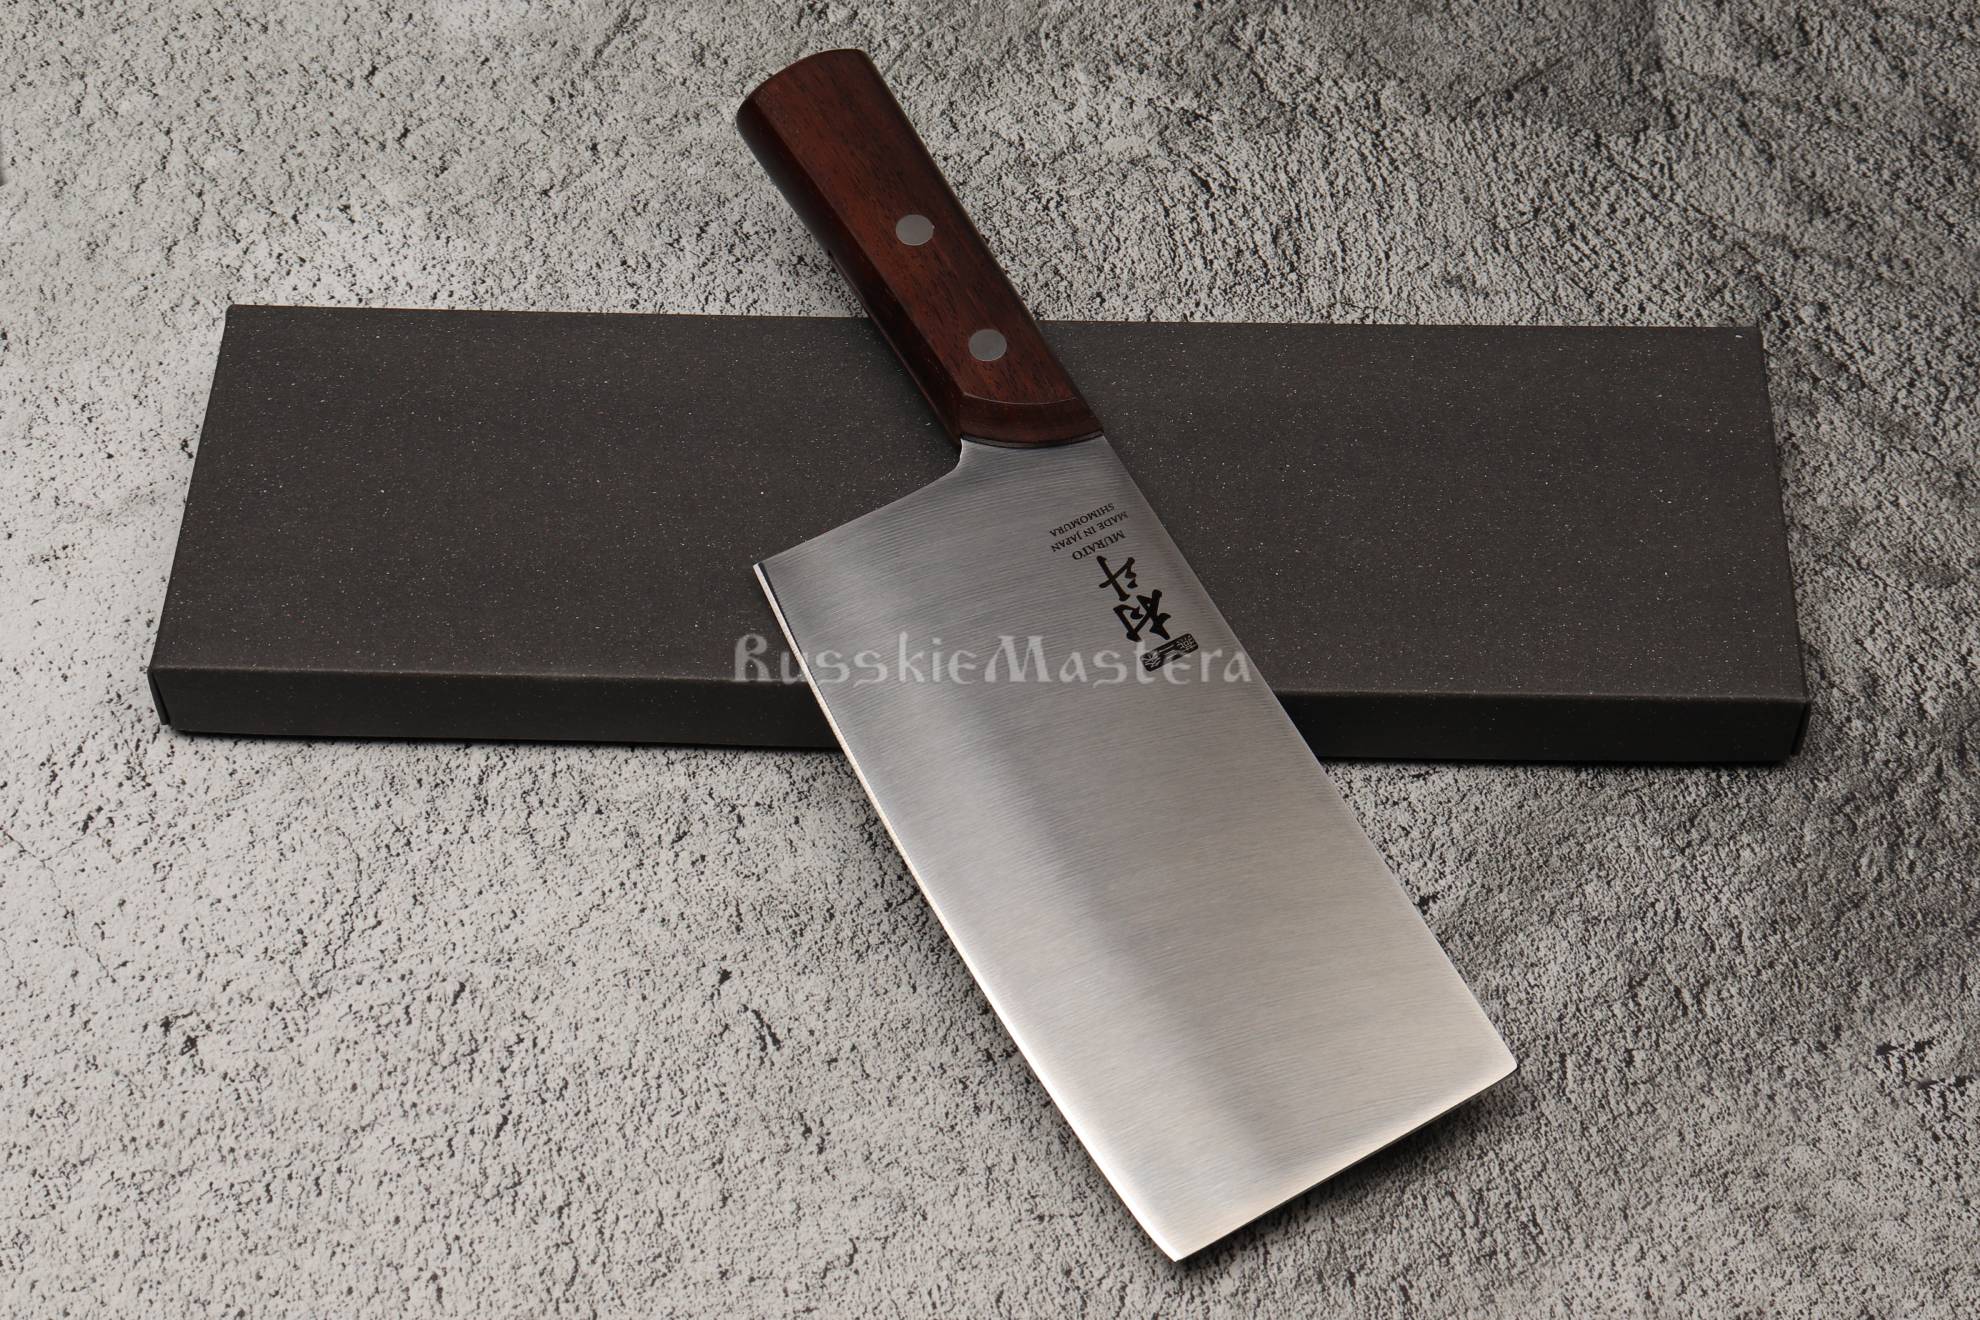 Китайский традиционный кухонный нож-топорик «MCK-102», сталь MoV Stainless Steel. Shimomura, Япония.